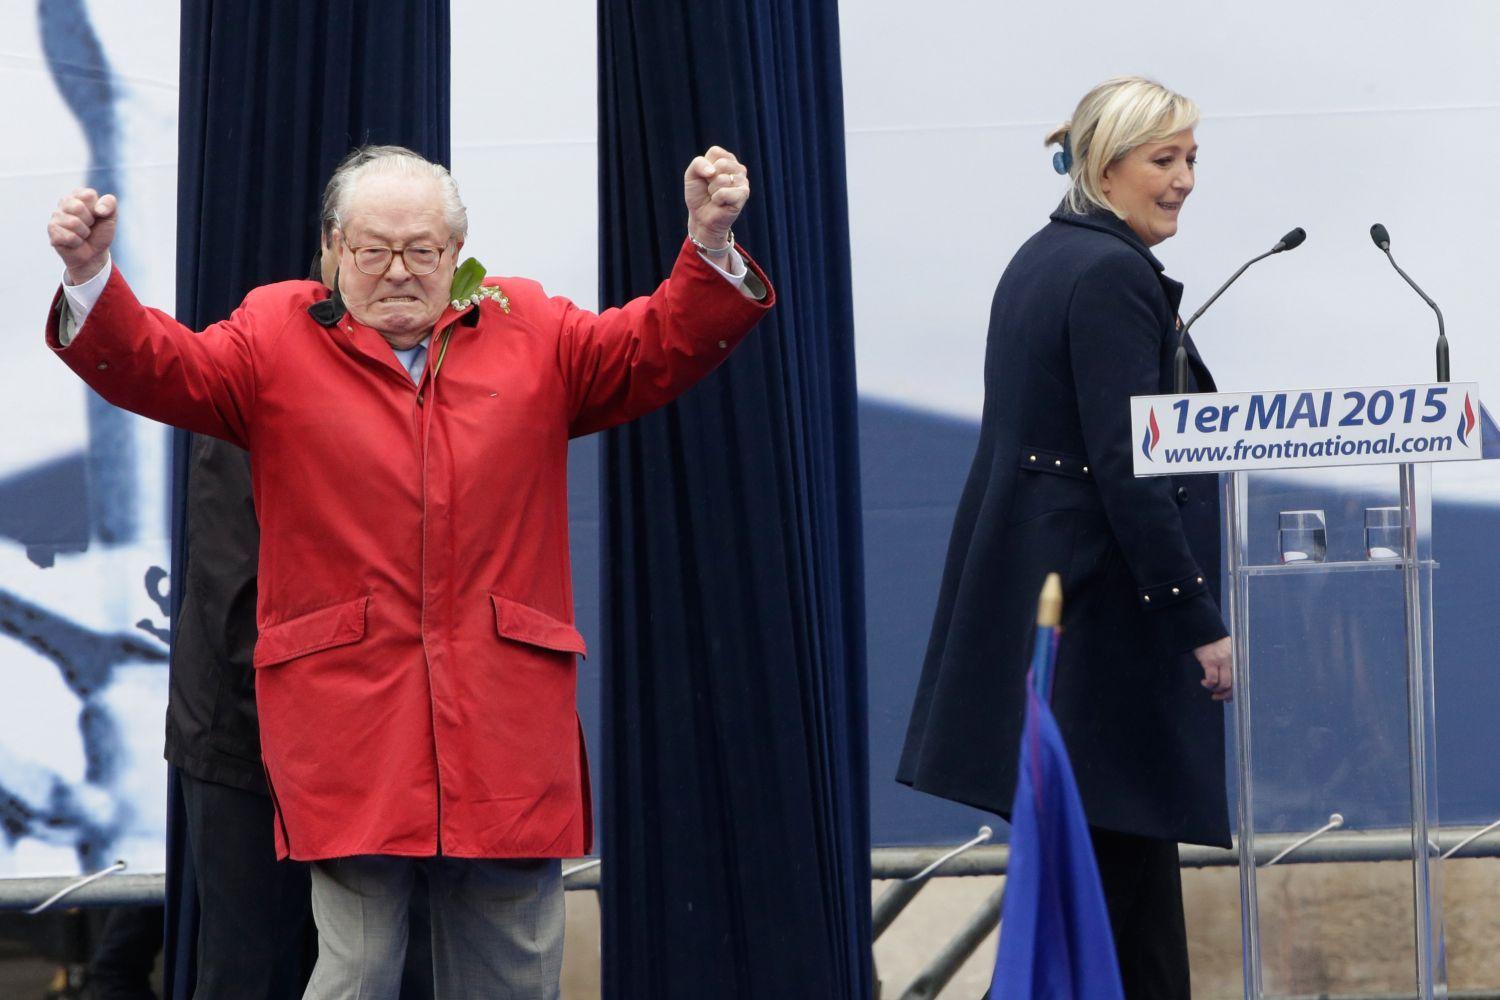 Le Pen rá sem nézett a lányára, csak magát ünnepeltette